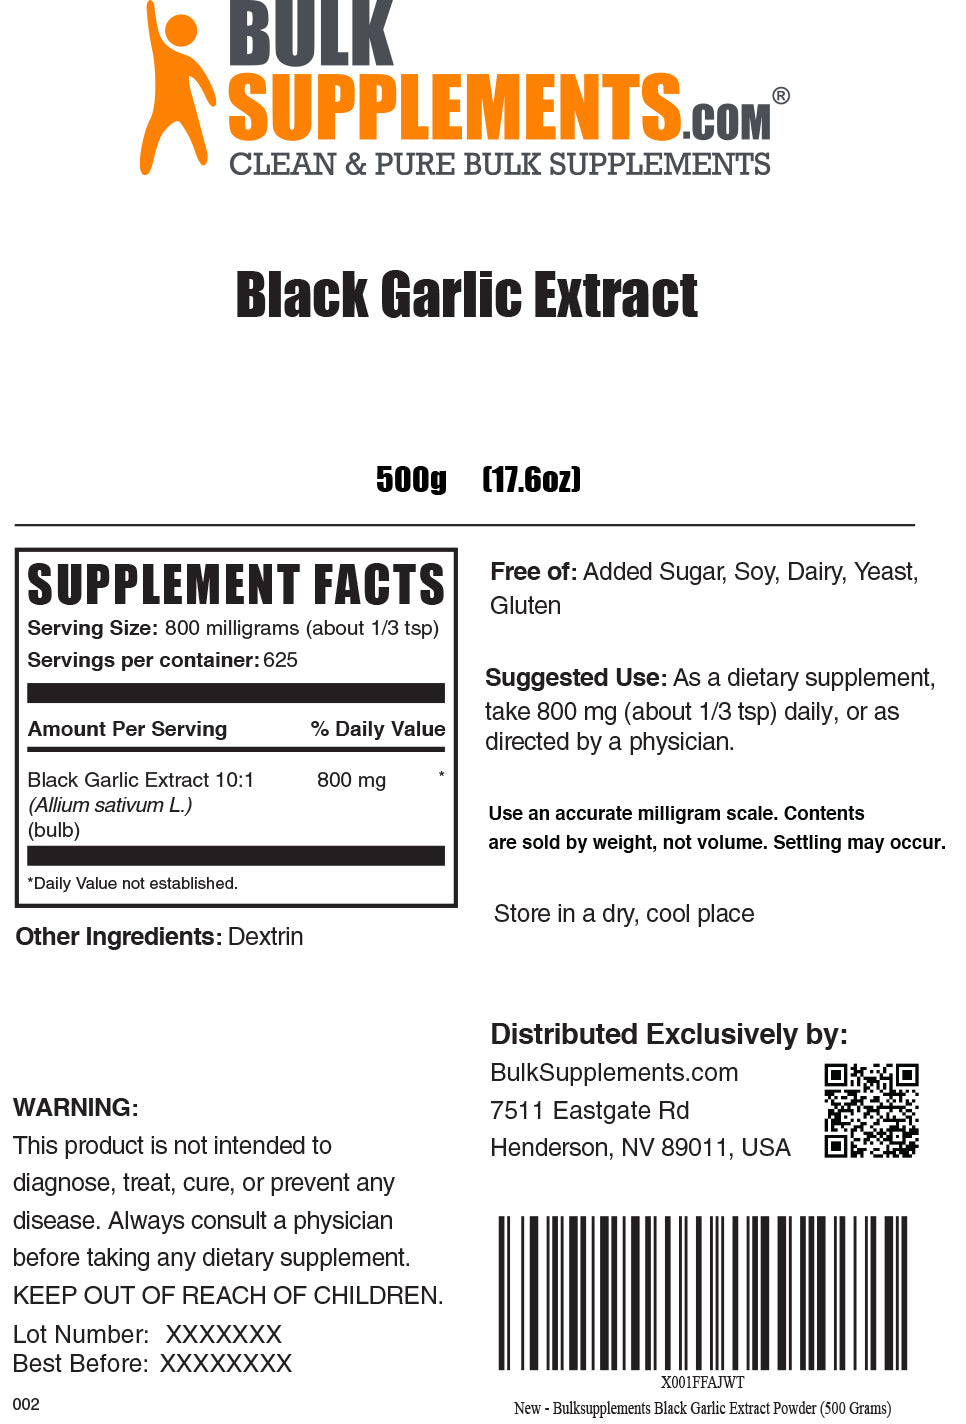 Black Garlic Extract Powder